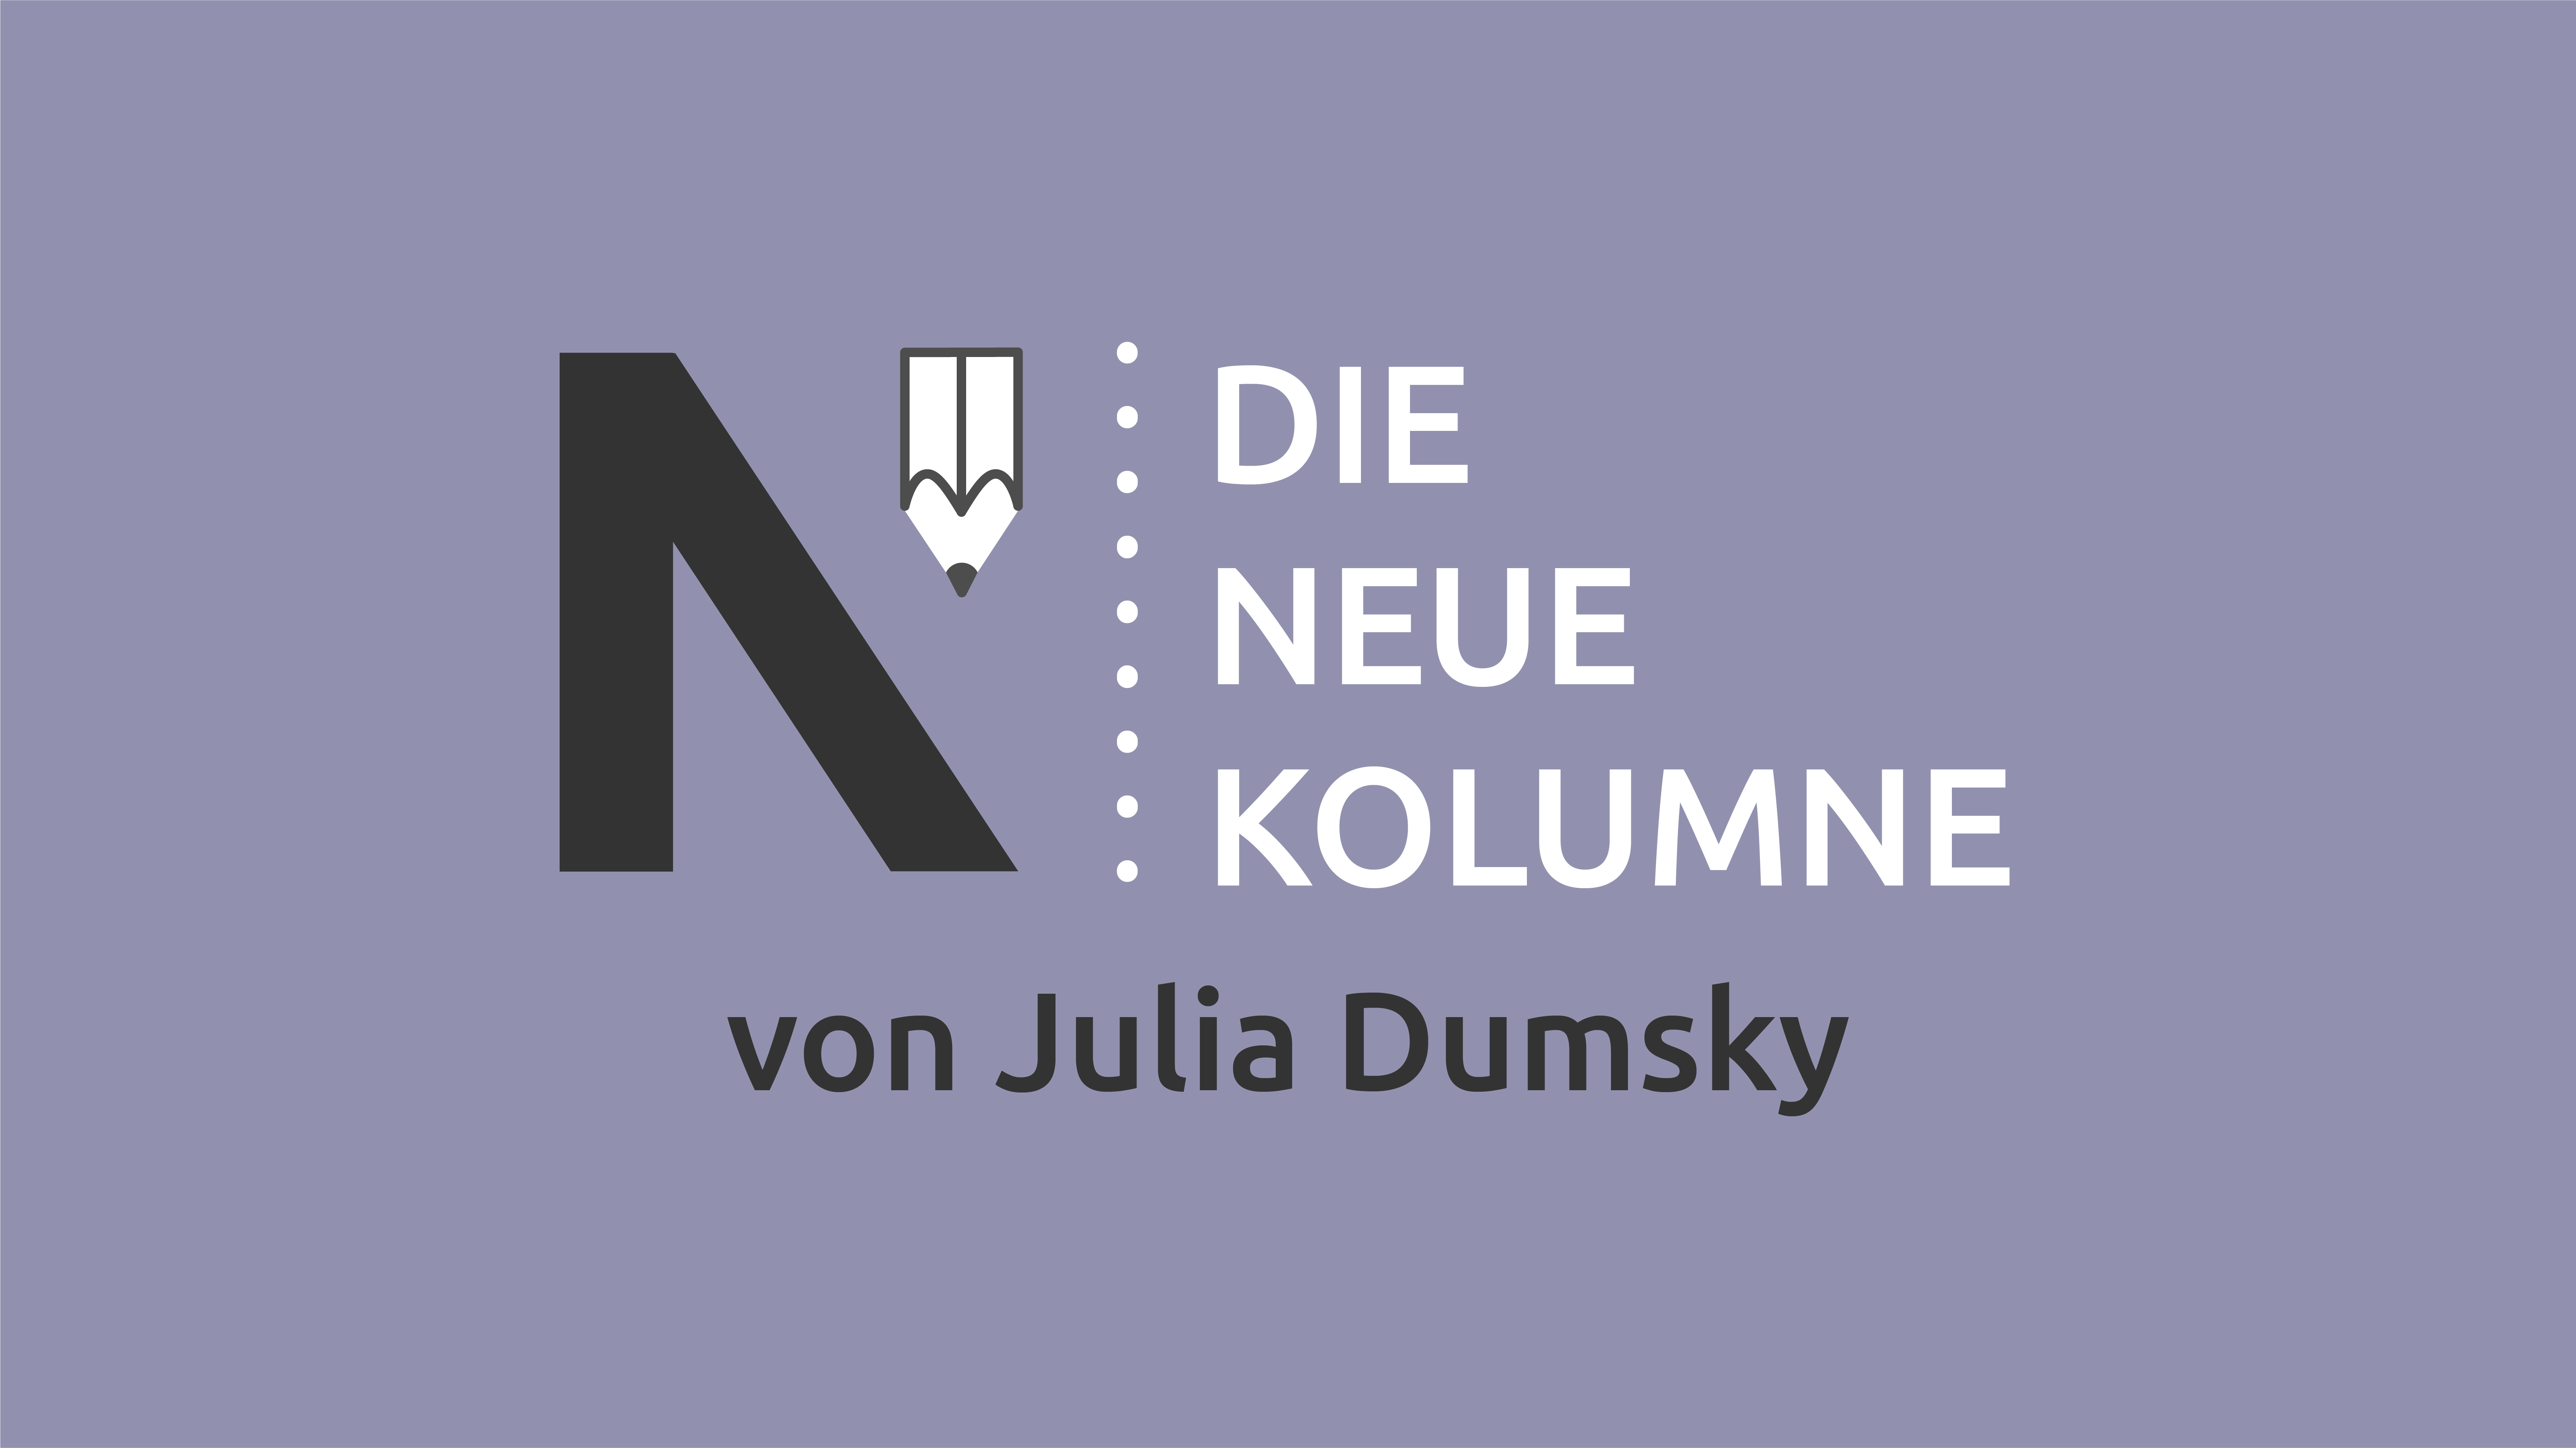 Das Logo von die neue Norm auf grauem Grund. Rechts davon steht: Die Neue Kolumne. Unten steht: Von Julia Dumsky.